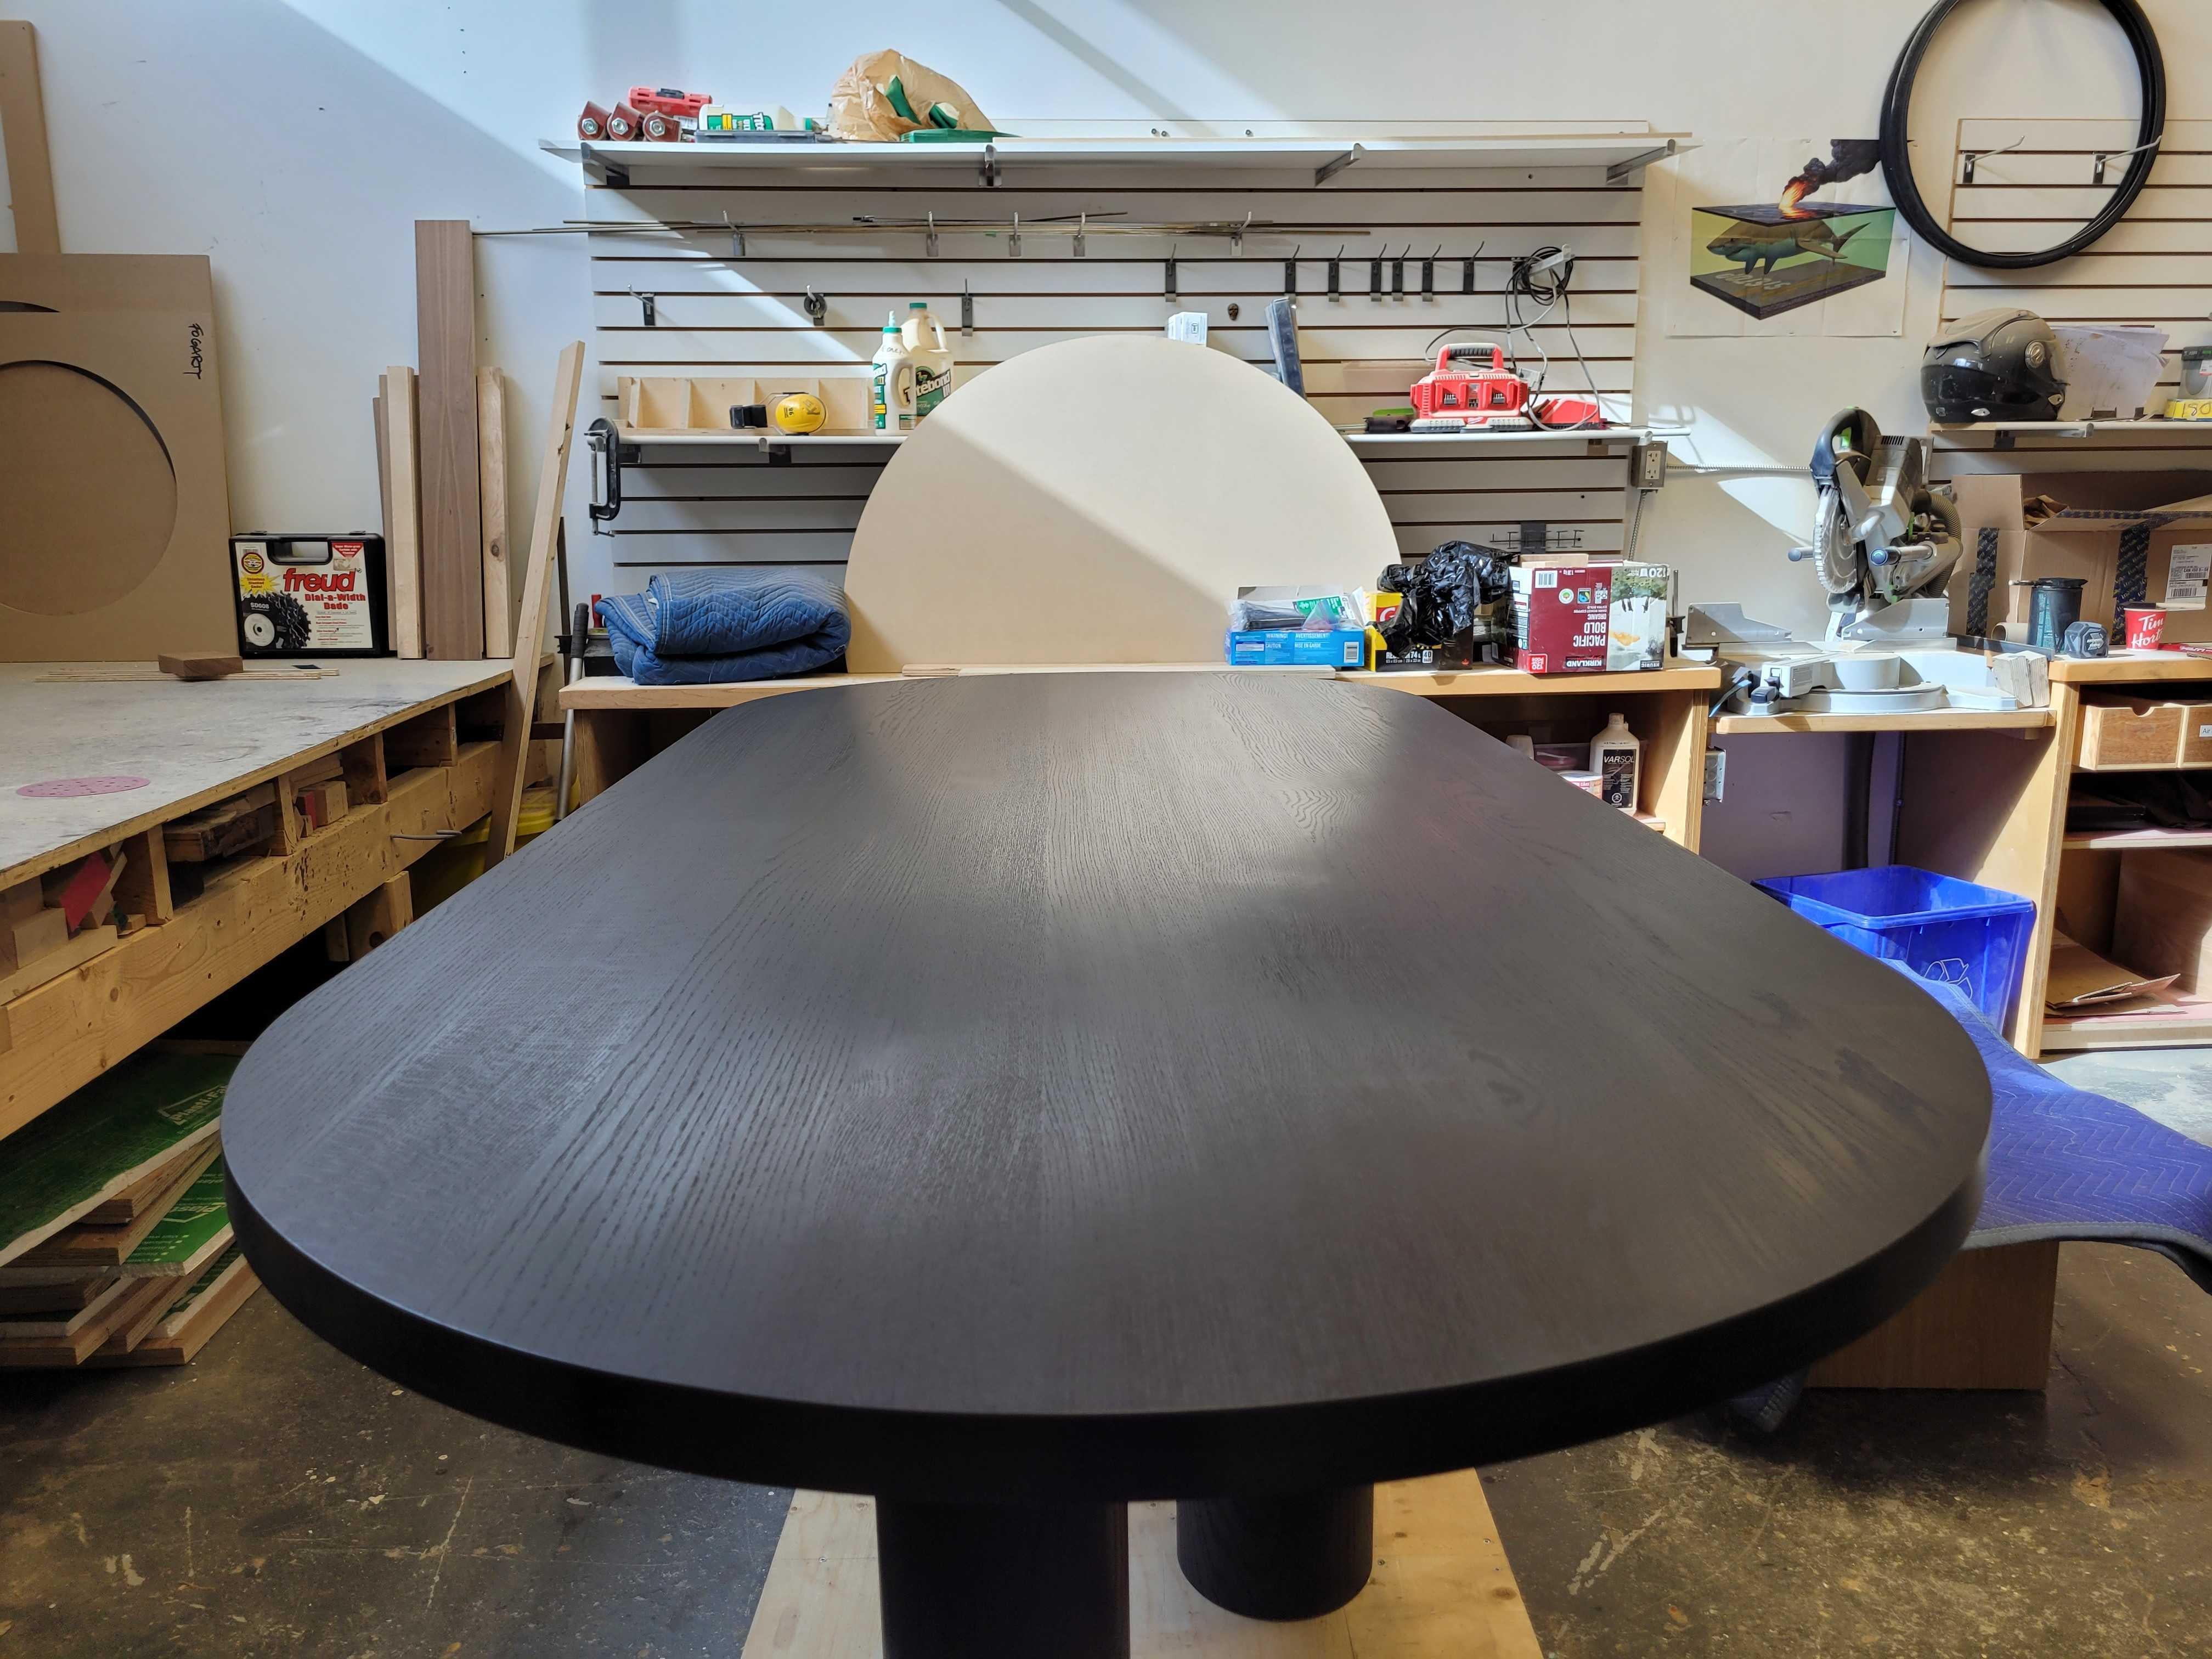 TABLE D'EDEN 
Conçue pour être sculpturale mais honnête dans sa simplicité, notre table de salle à manger Eden peut trouver sa place dans un environnement contemporain, ou comme pièce d'apparat dans un espace plus classique.

Cette offre concerne